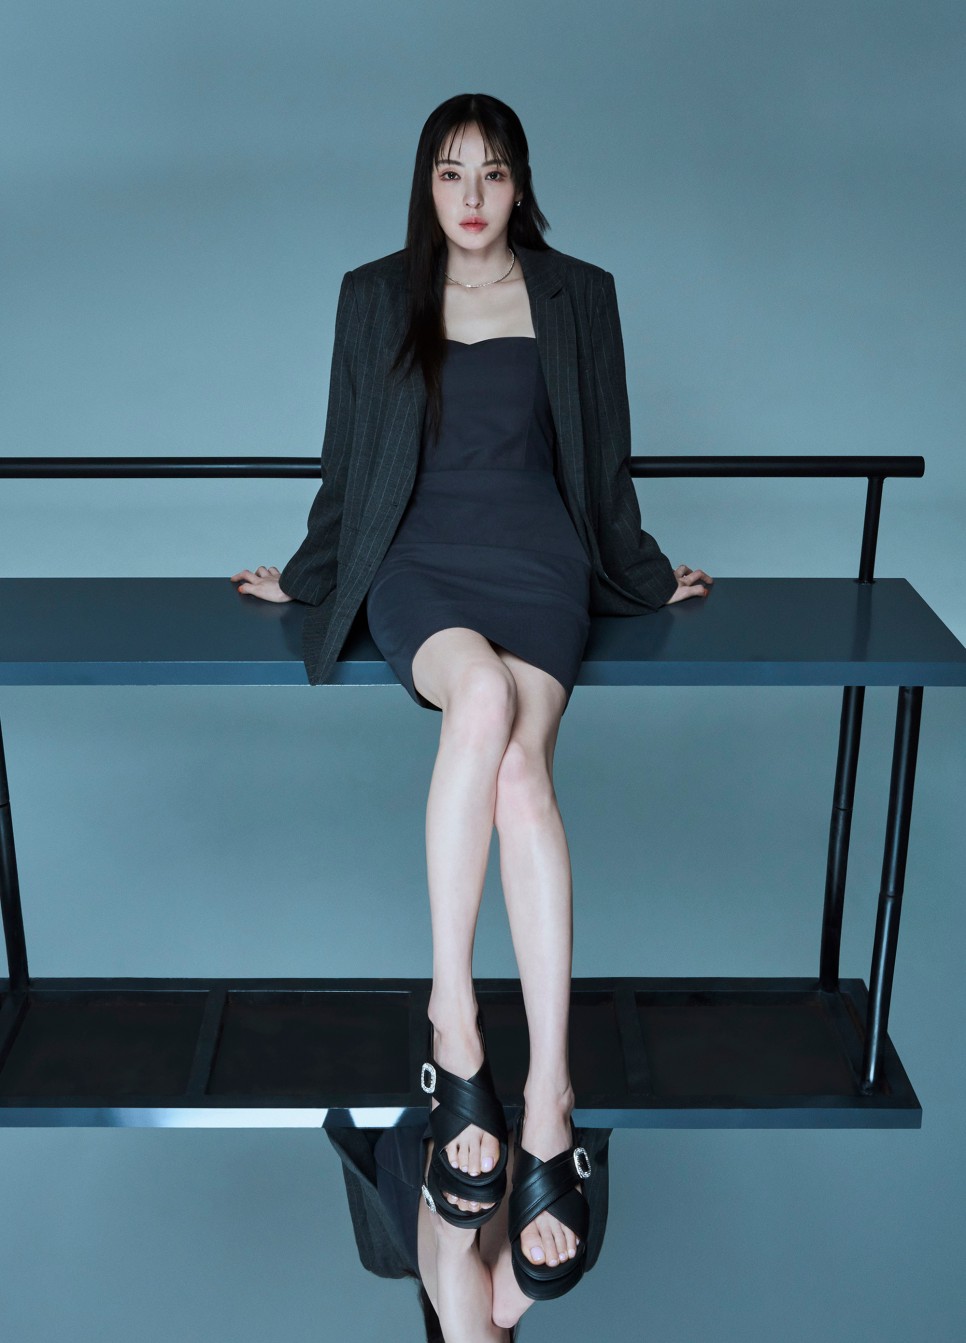 여름 샌들 여성 신발 브랜드 핏플랍! 이다희 화보 패션 속 발편한 샌들 추천